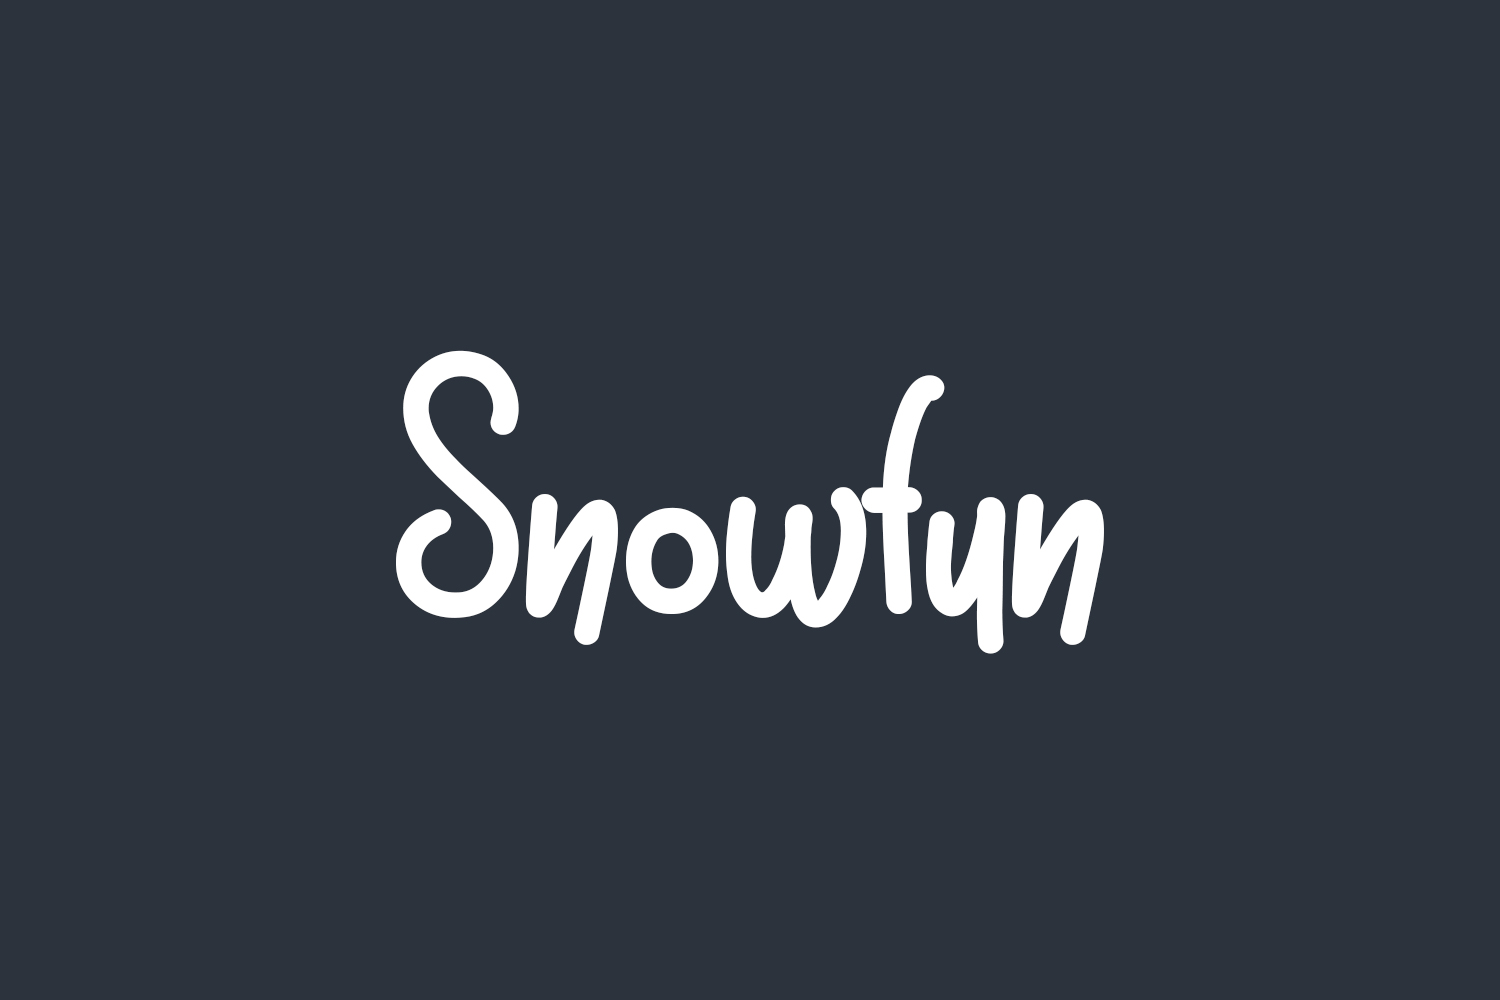 Snowfun Free Font